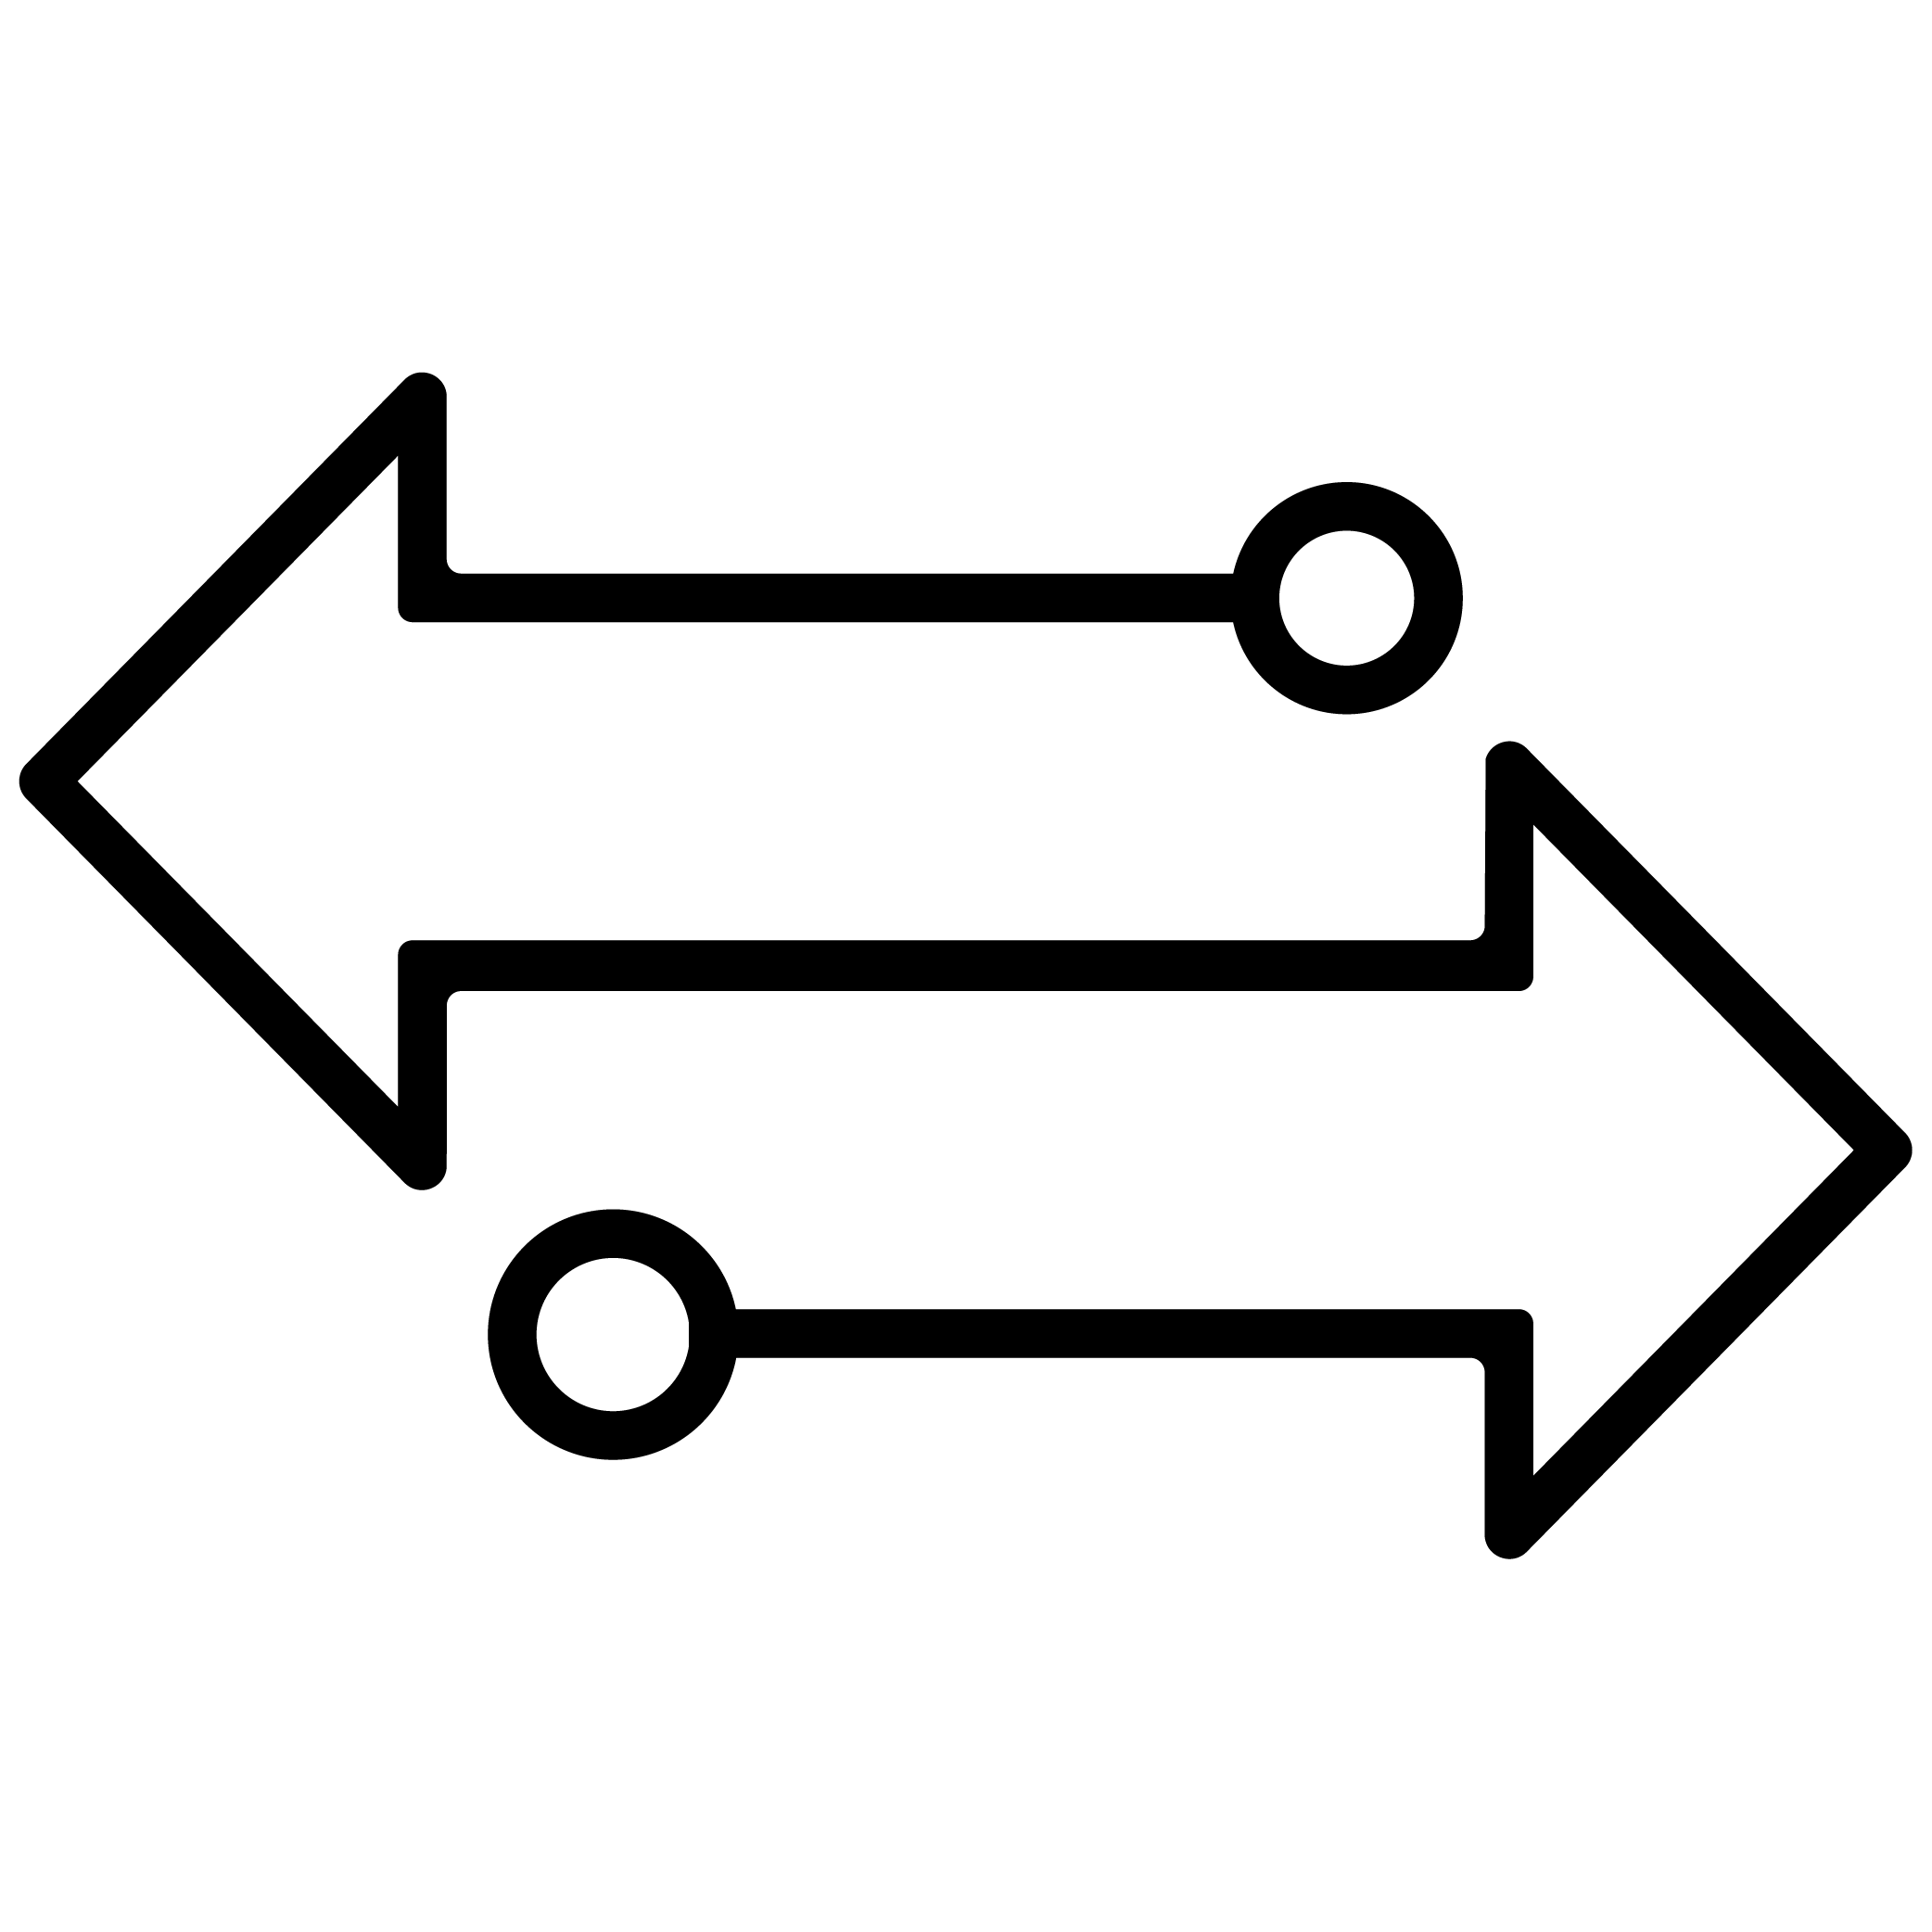 Sync Arrow icon, black